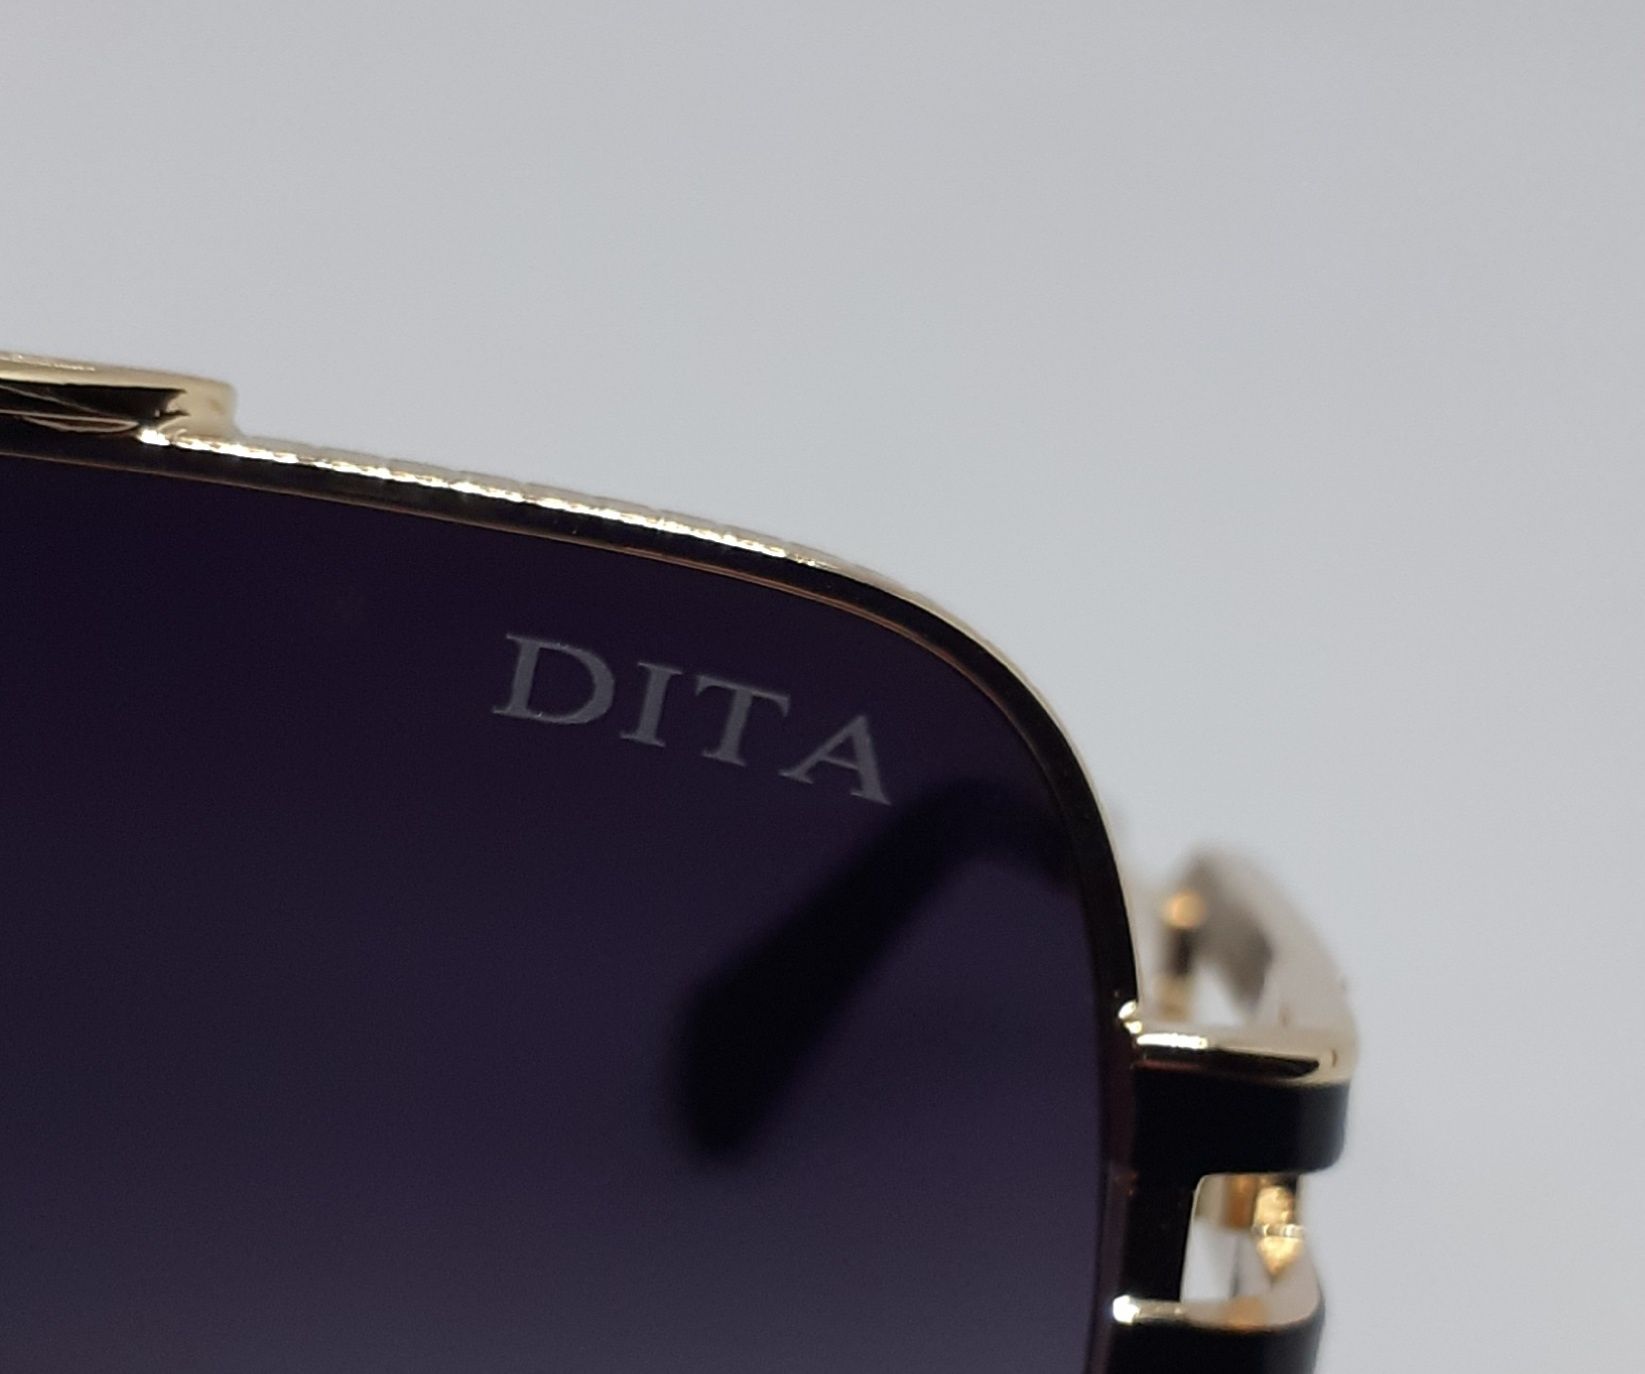 Dita стильные мужские очки темно серый градиент в золотой метал оправе